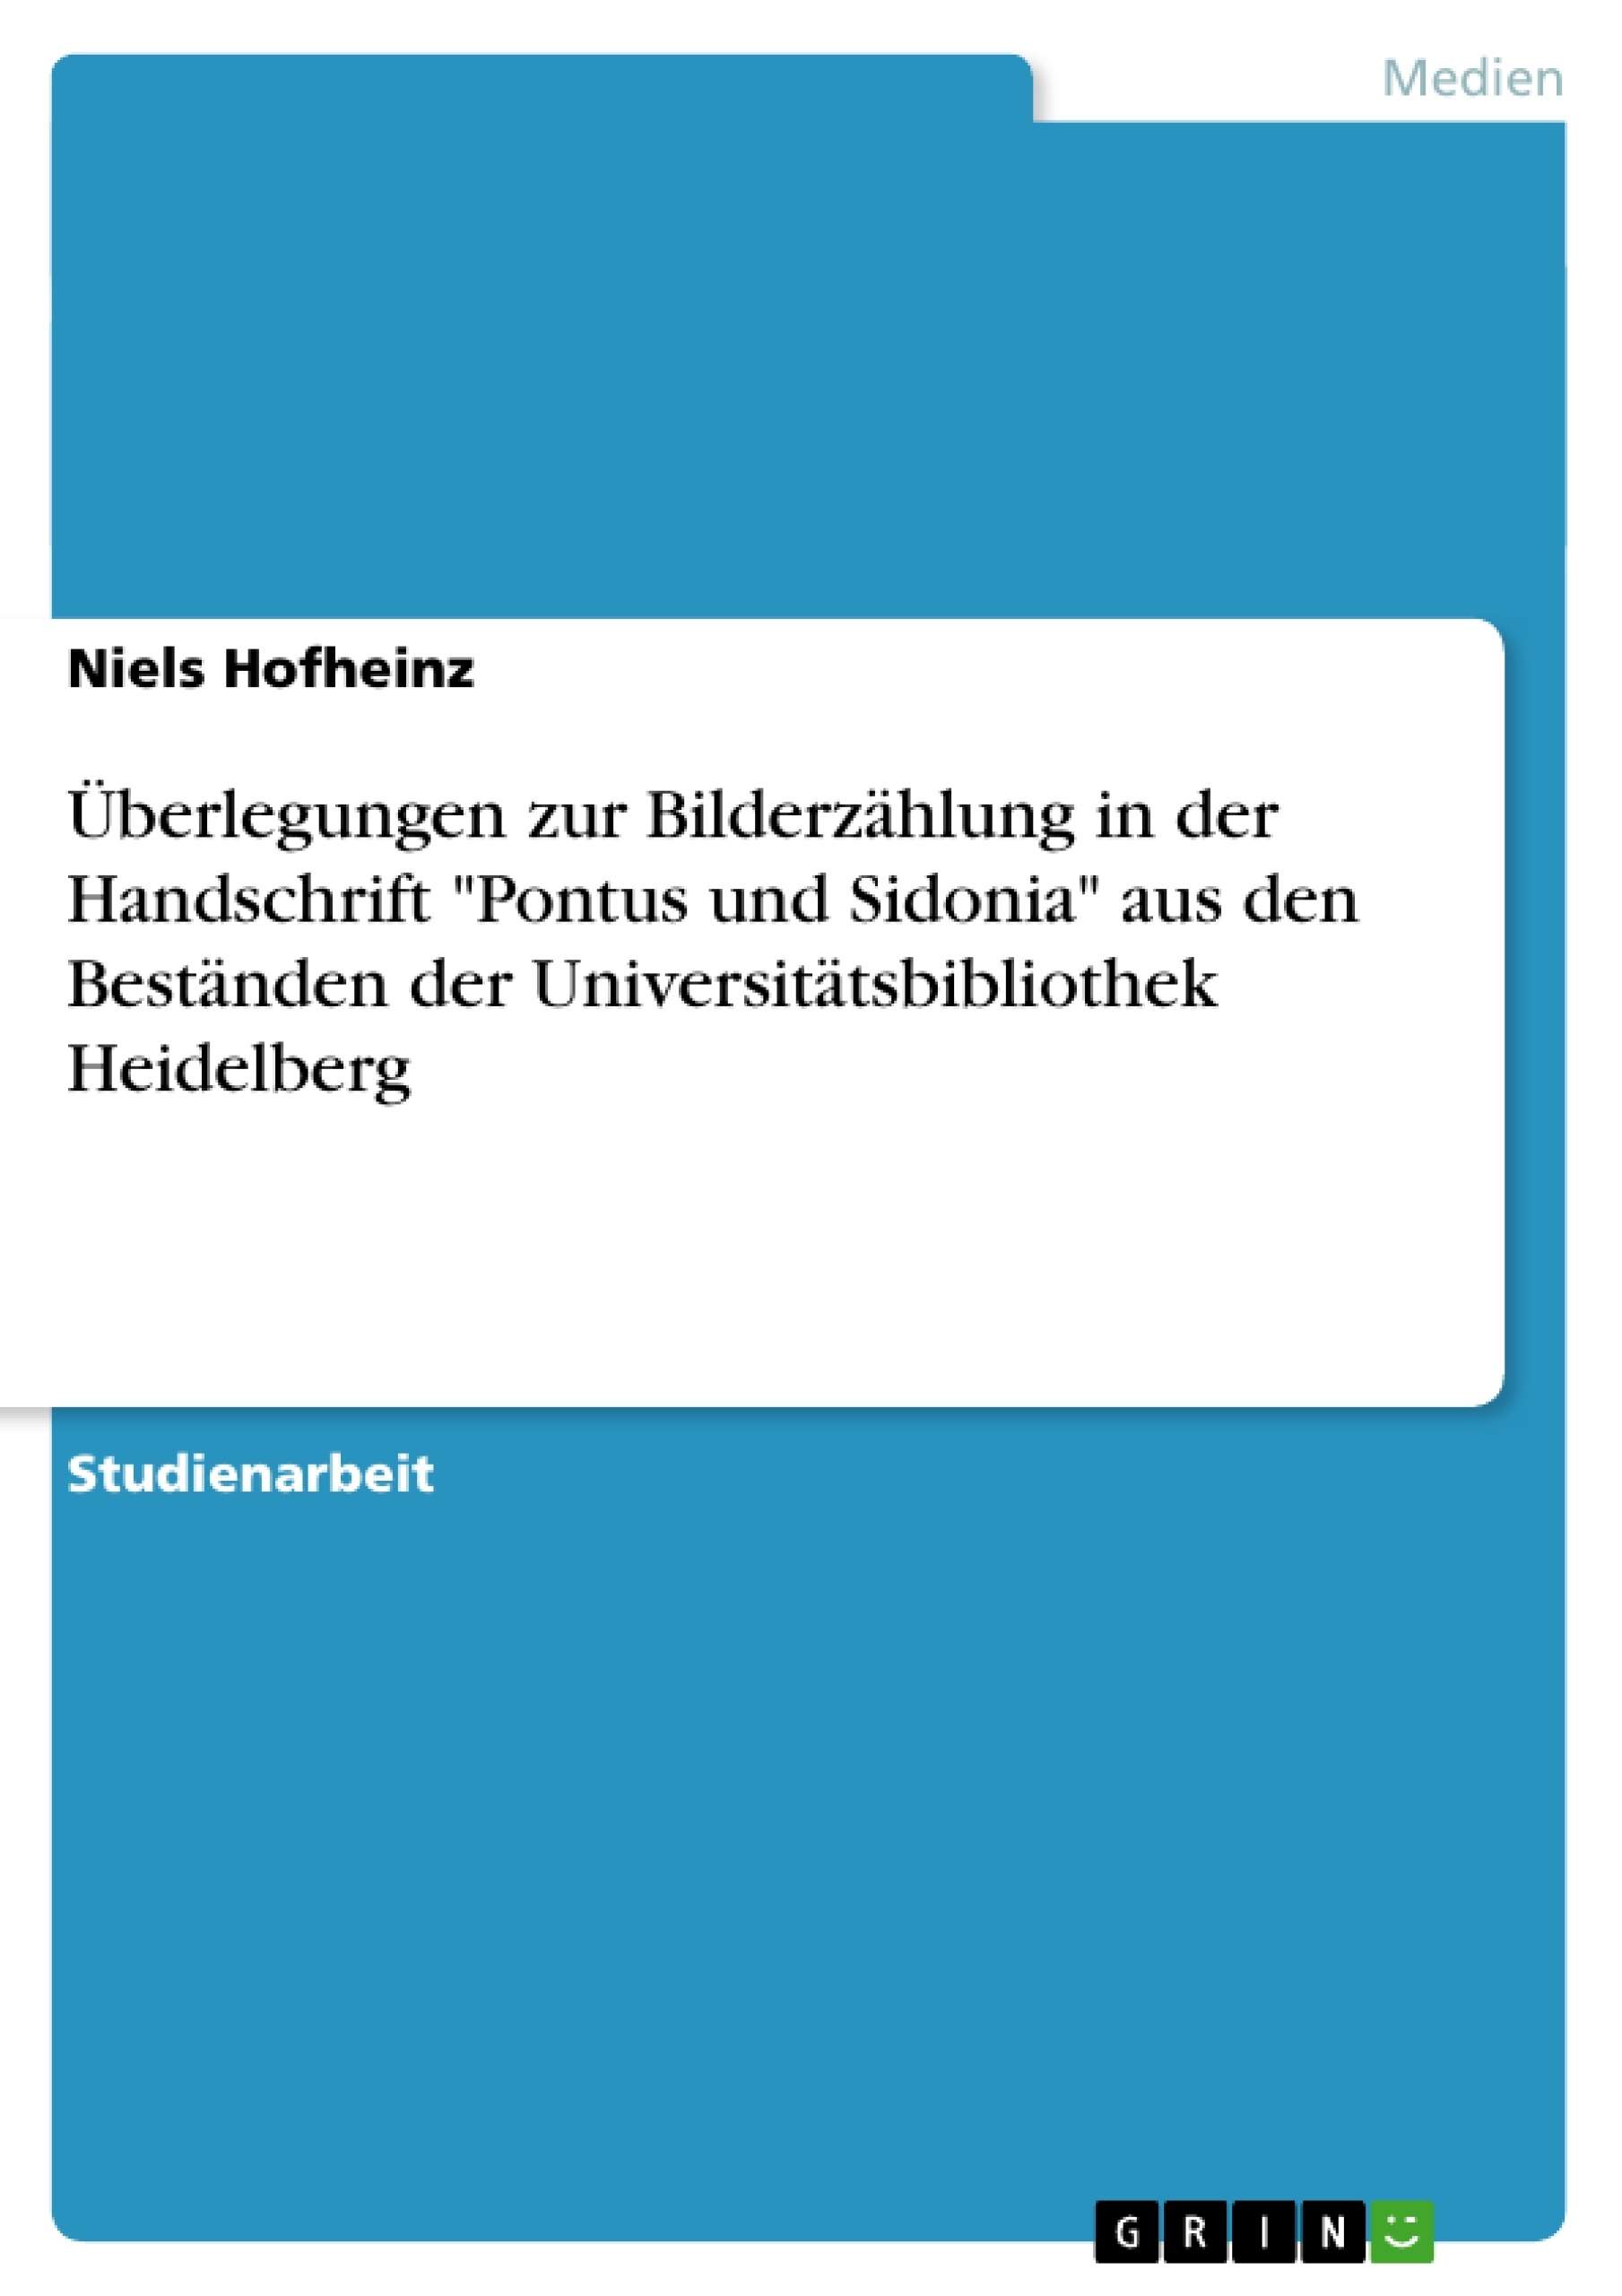 Titel: Überlegungen zur Bilderzählung in der Handschrift "Pontus und Sidonia" aus den Beständen der Universitätsbibliothek Heidelberg